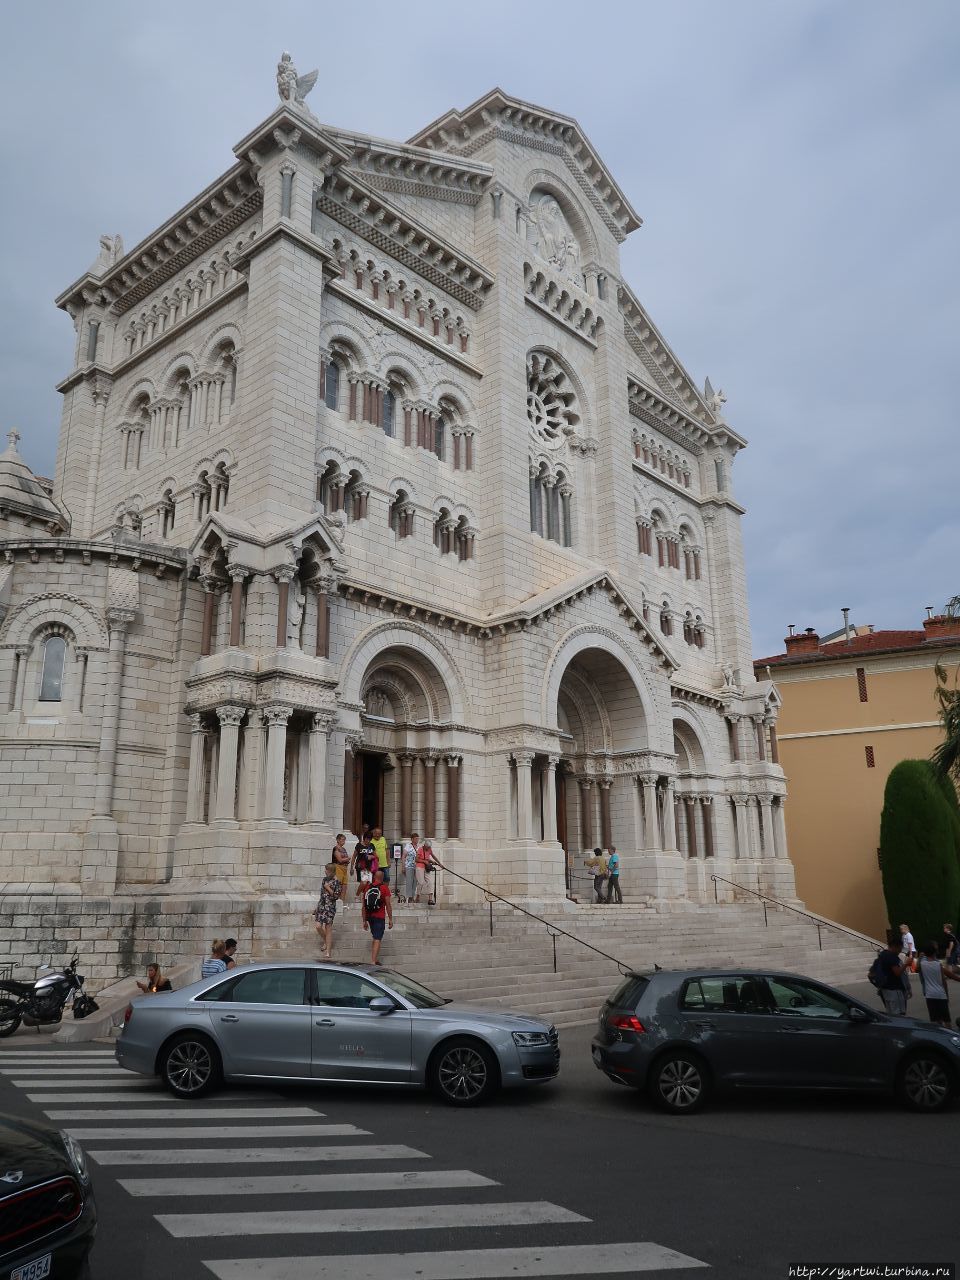 Собор Святого Николая (la cathédrale de Monaco) — католический собор в Монако. Монако